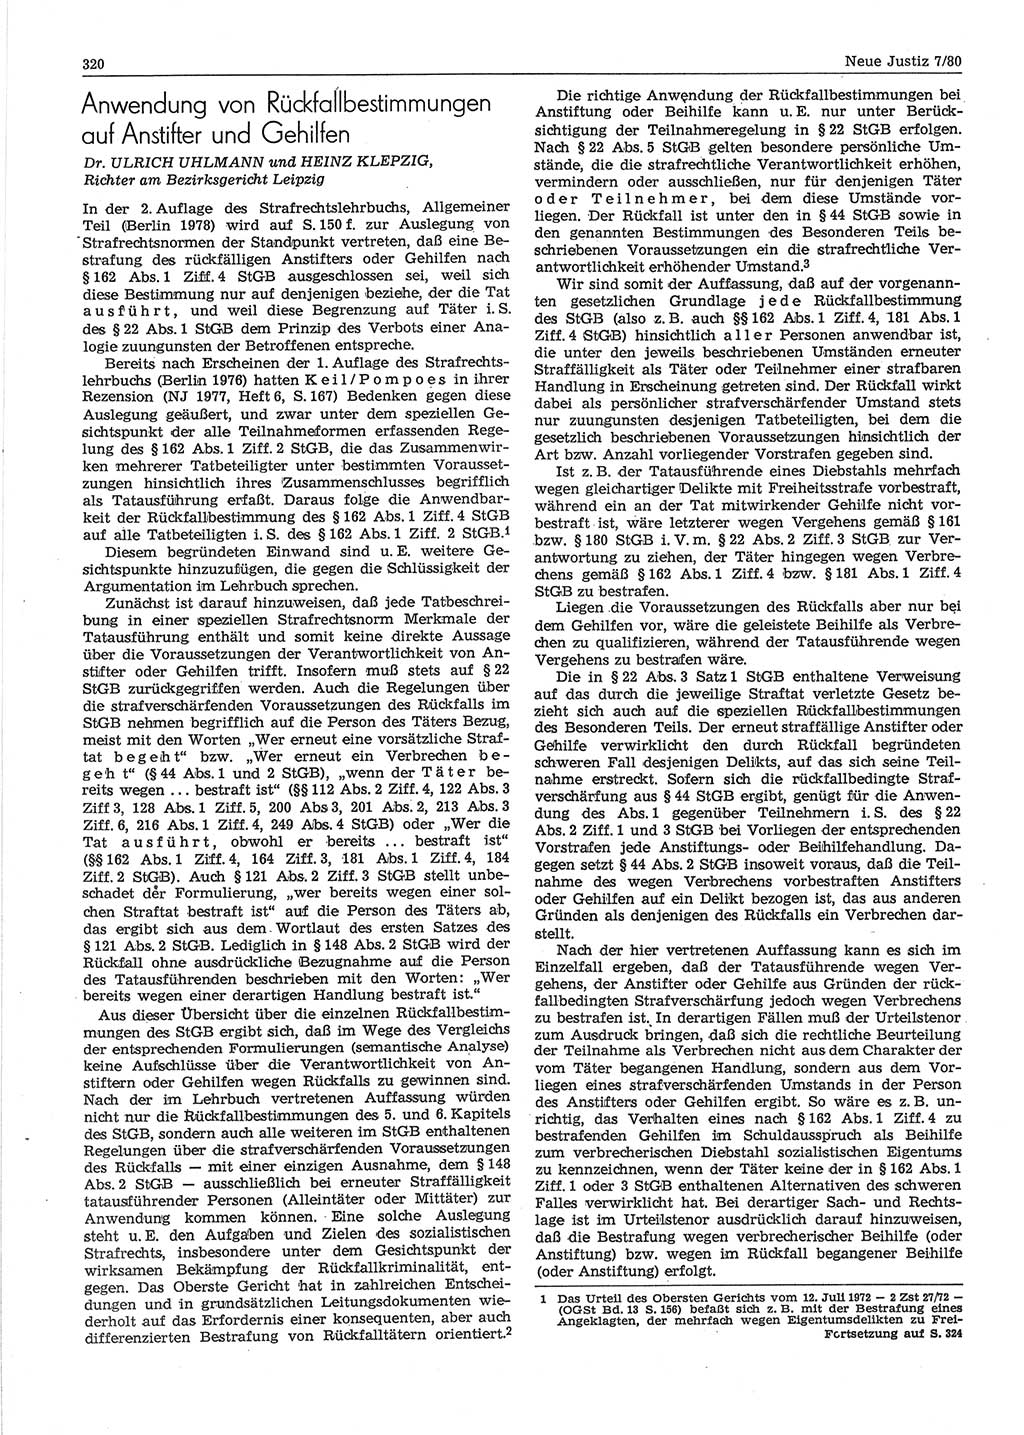 Neue Justiz (NJ), Zeitschrift für sozialistisches Recht und Gesetzlichkeit [Deutsche Demokratische Republik (DDR)], 34. Jahrgang 1980, Seite 320 (NJ DDR 1980, S. 320)